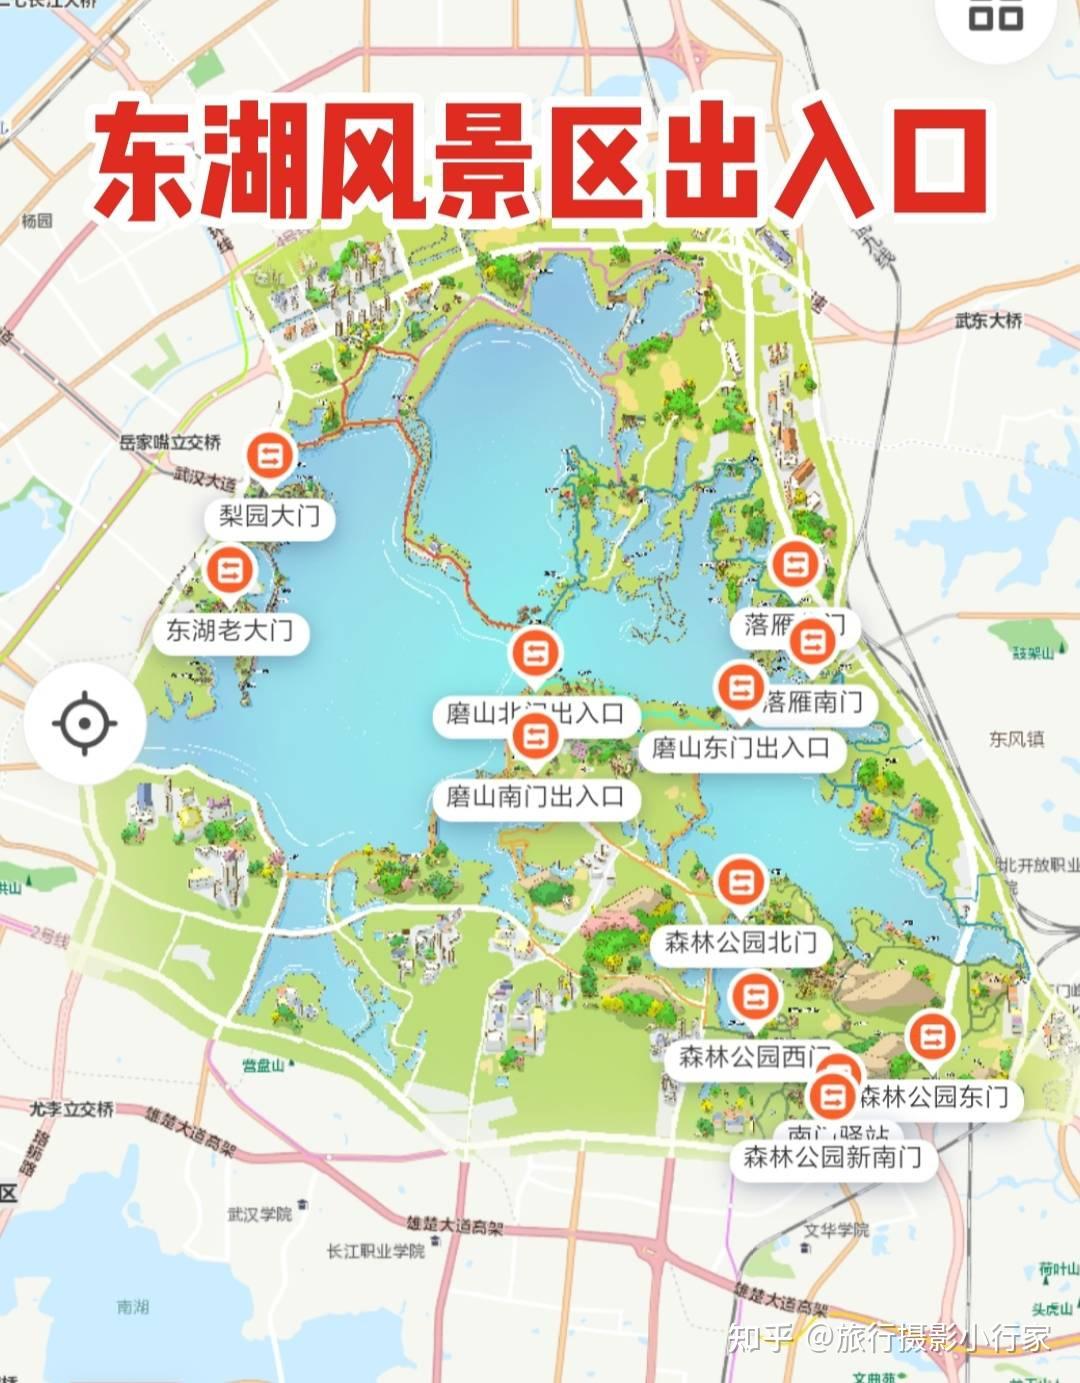 武汉旅游行李寄存攻略景点地图地铁沿线景点门票及武汉美食